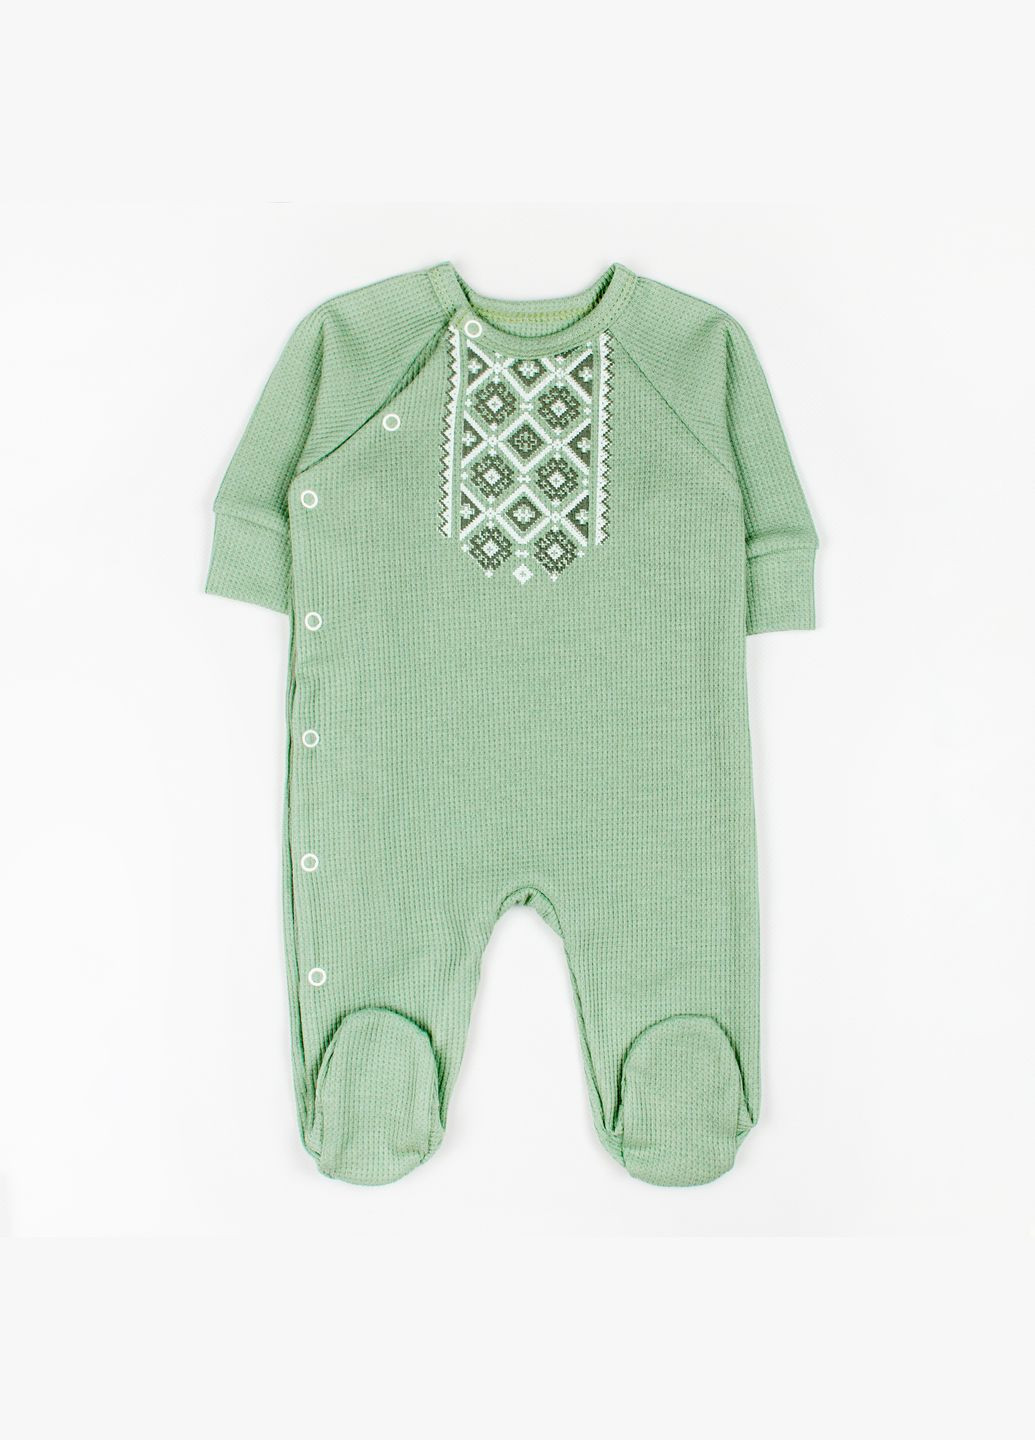 Человечек Dexter`s для новорожденных с принтом вышиванка оливковый зеленый dexter's (279760701)